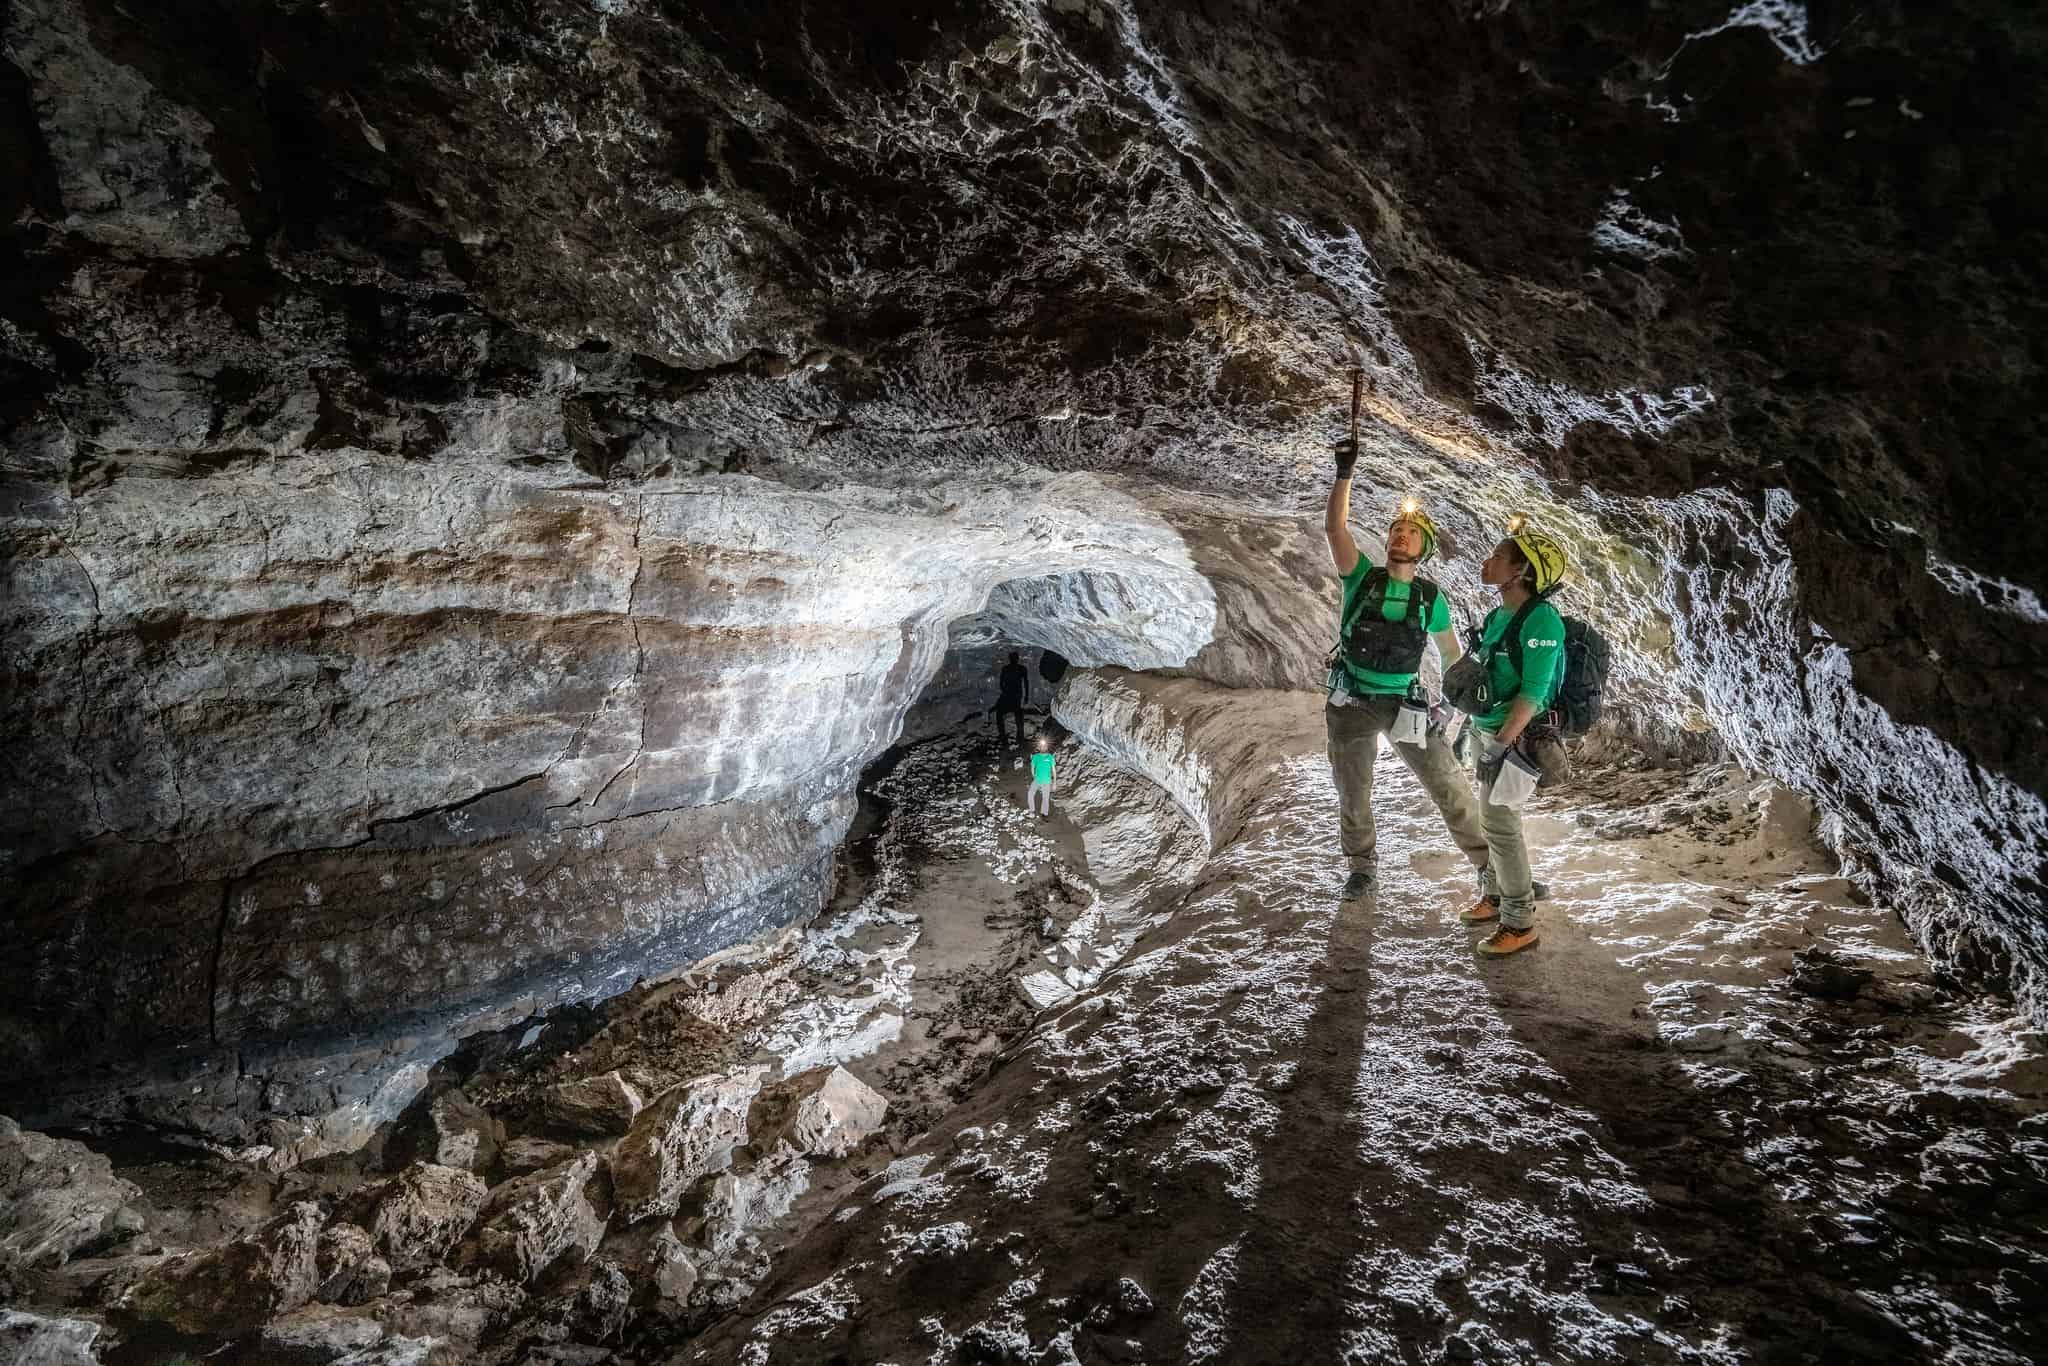 ¿Vivirán los astronautas en cuevas? Eligen España para ver cómo